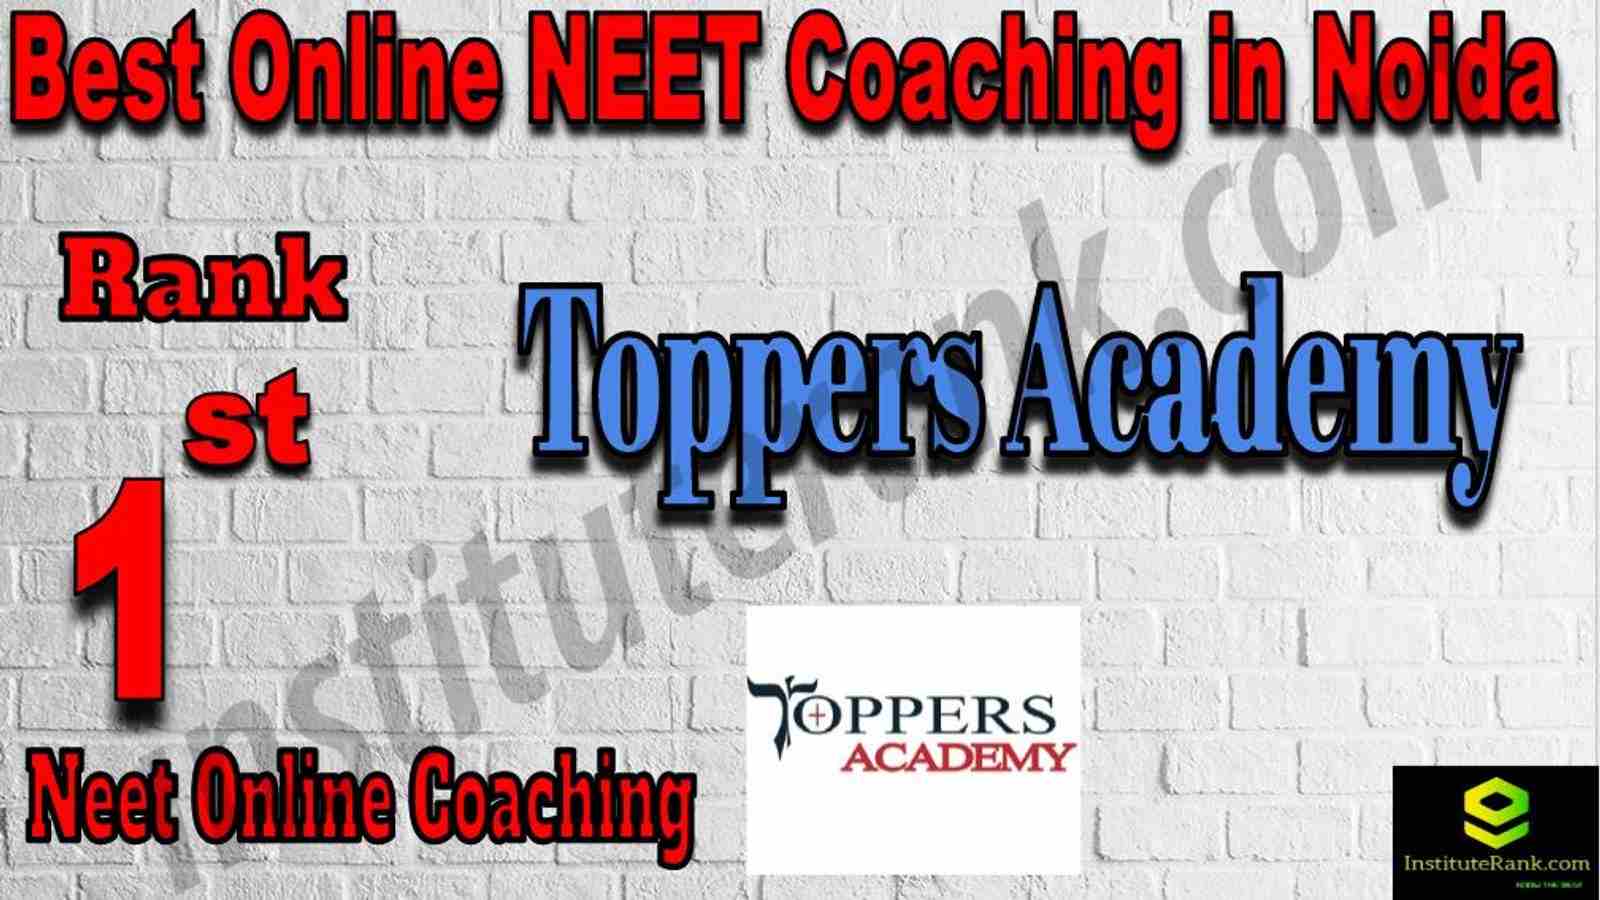 1st Best Online NEET Coaching in Noida